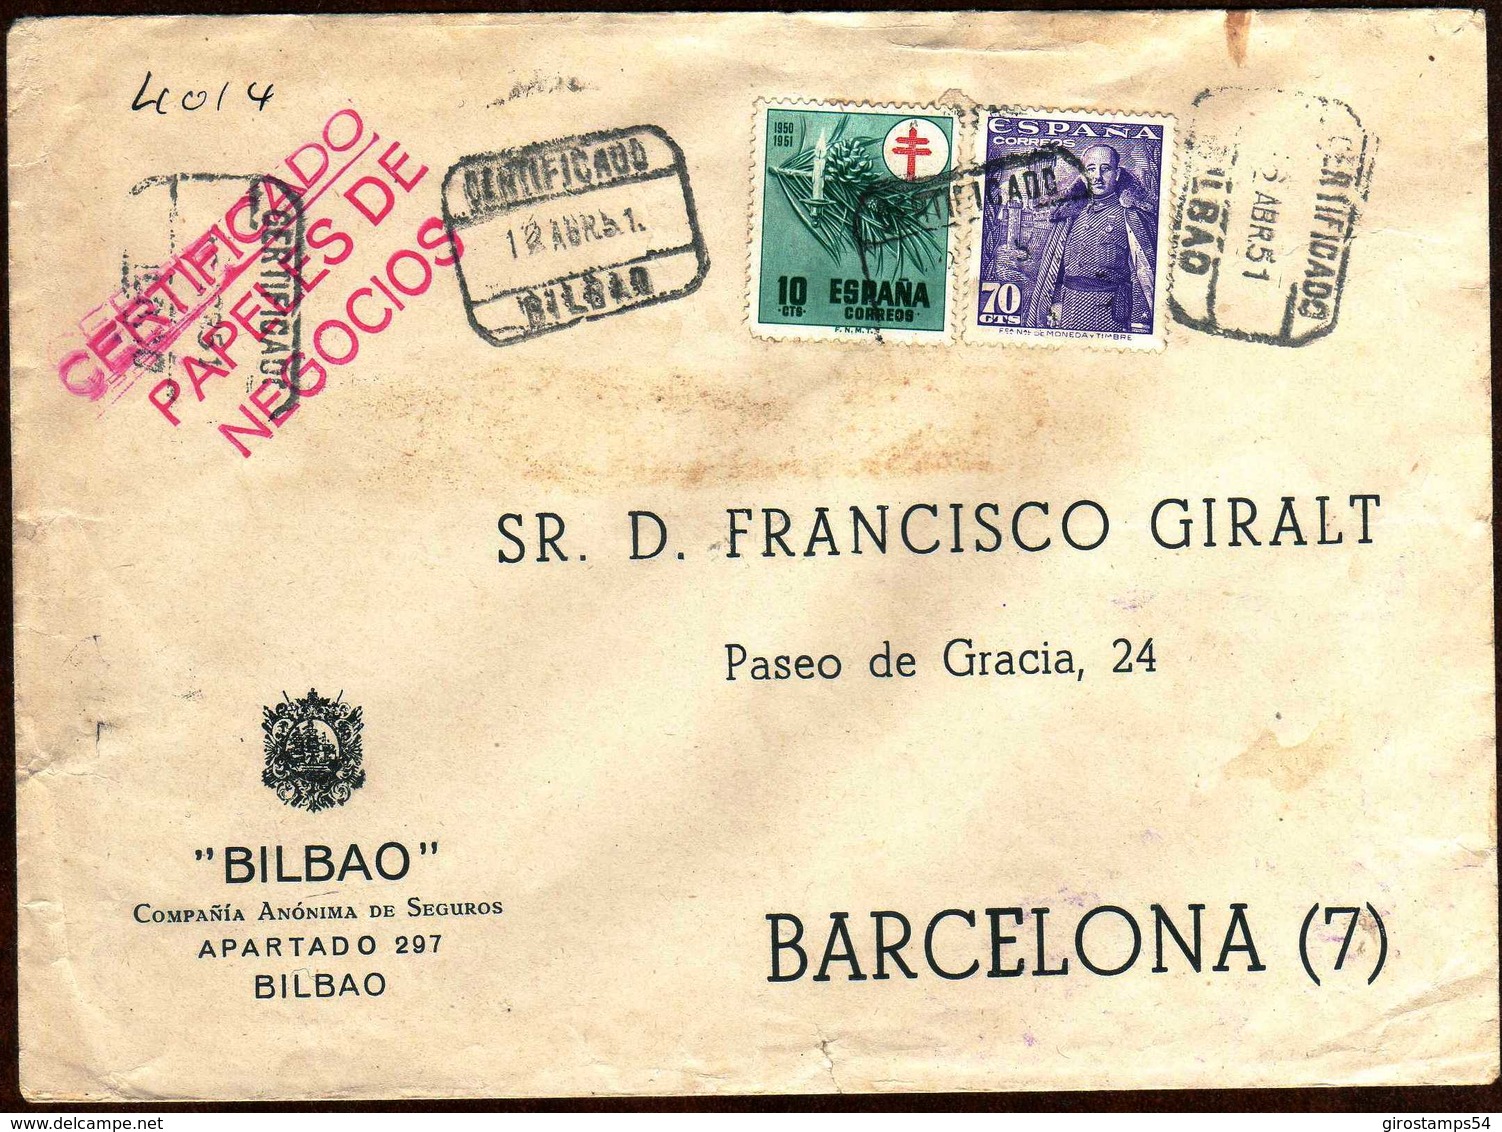 Girostamps54.- SOBRE COMERCIAL CIRCULADO POR CORREO CERTIFICADO DE BILBAO A BARCELONA EN 1951 - Lettres & Documents